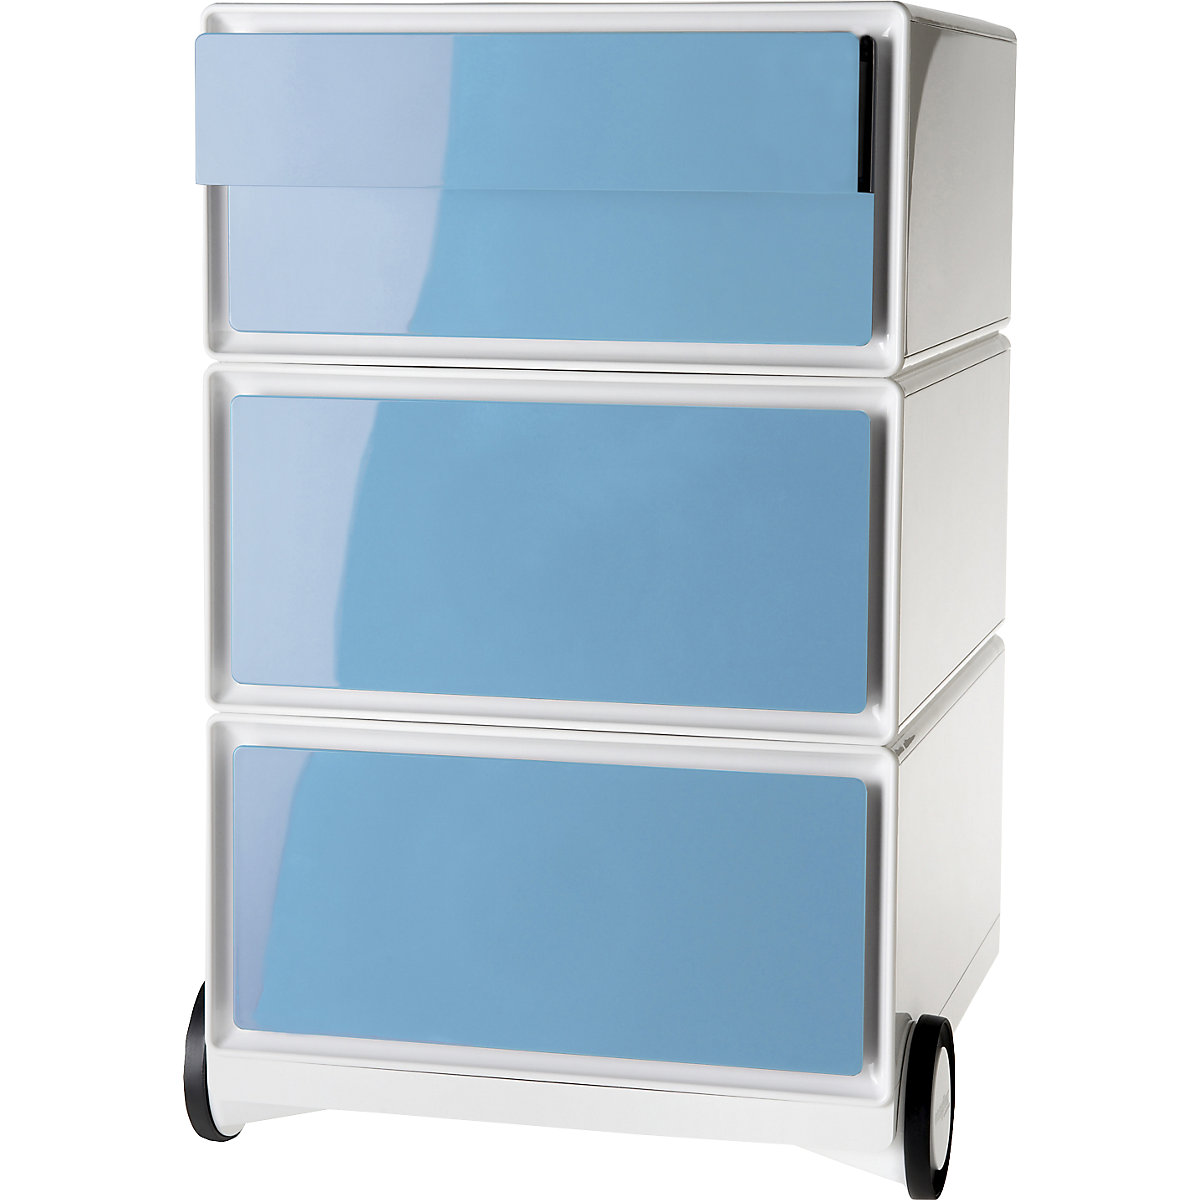 Pokretni ladičar easyBox® – Paperflow, 2 ladice, 2 plitke ladice, u bijeloj / plavoj boji